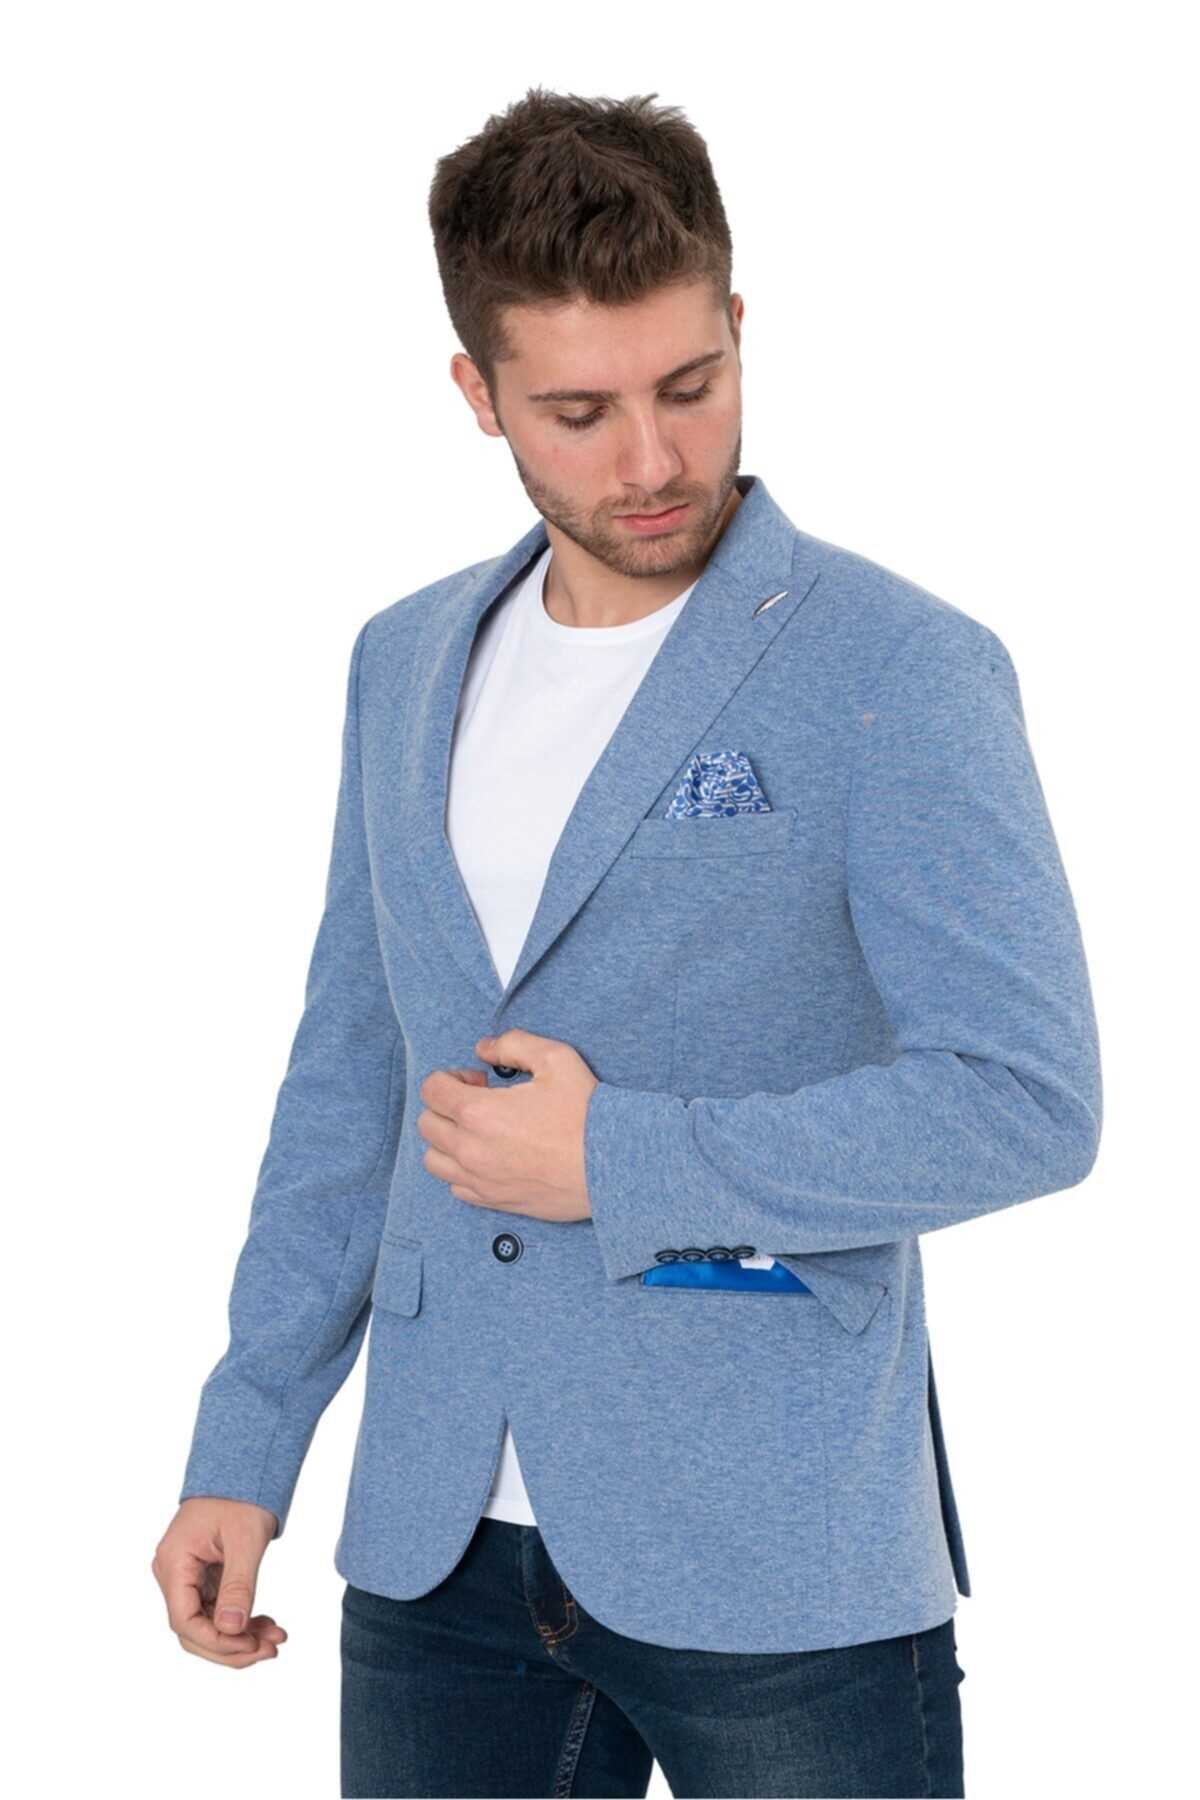 کت تک مردانه خاص برند White Stone رنگ آبی کد ty94340727